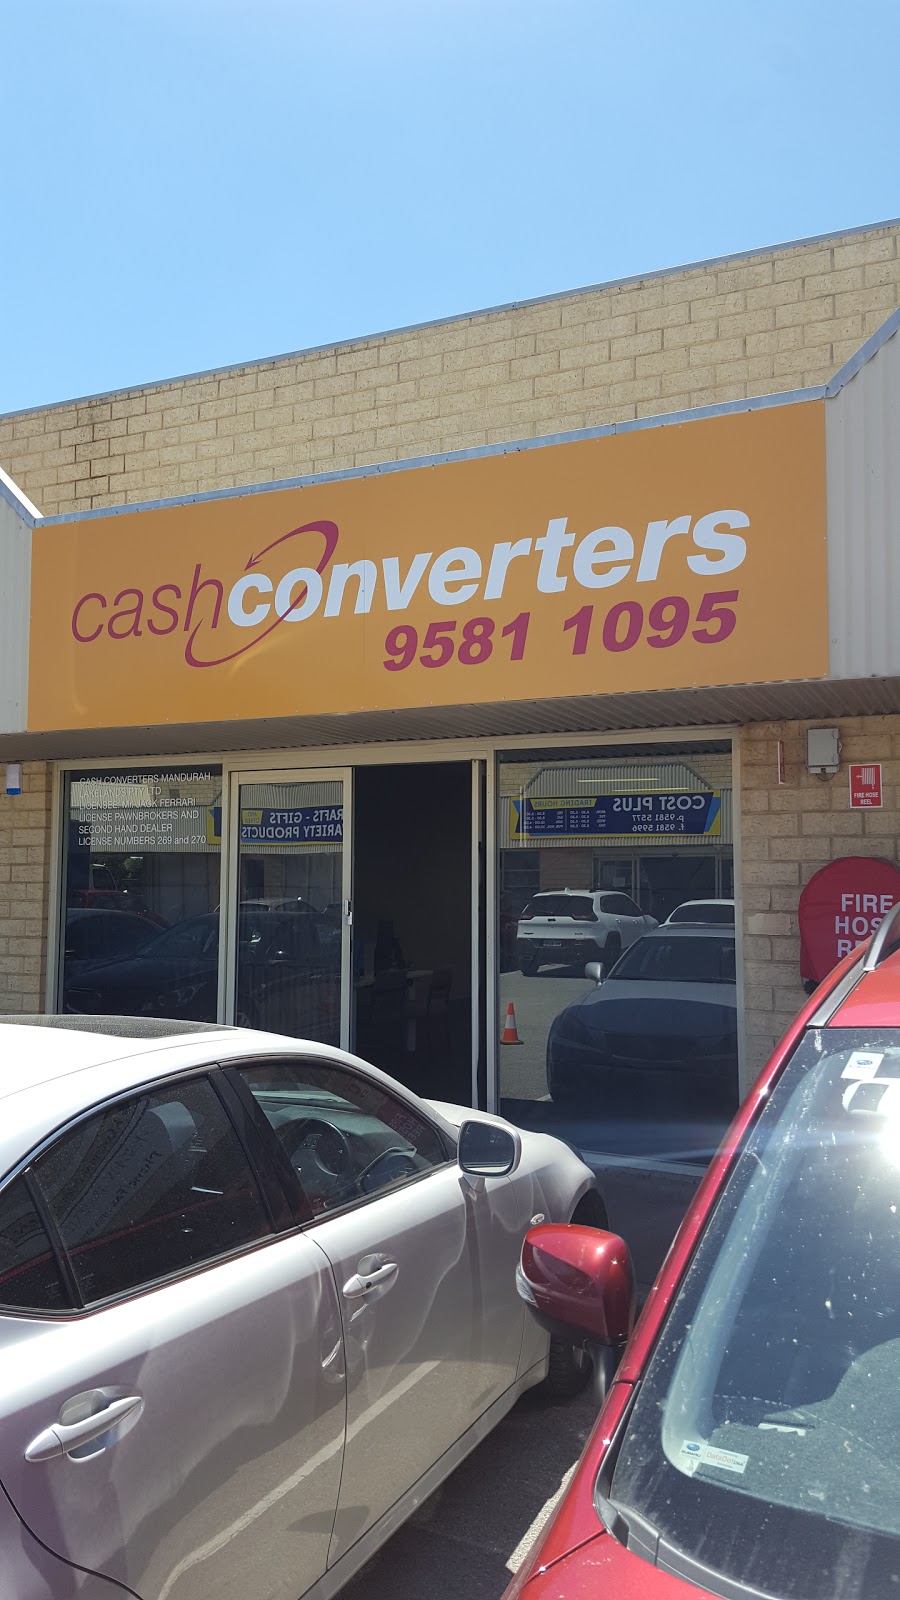 Cash Converters Mandurah | jewelry store | 6 Dower St, Mandurah WA 6210, Australia | 0895811095 OR +61 8 9581 1095